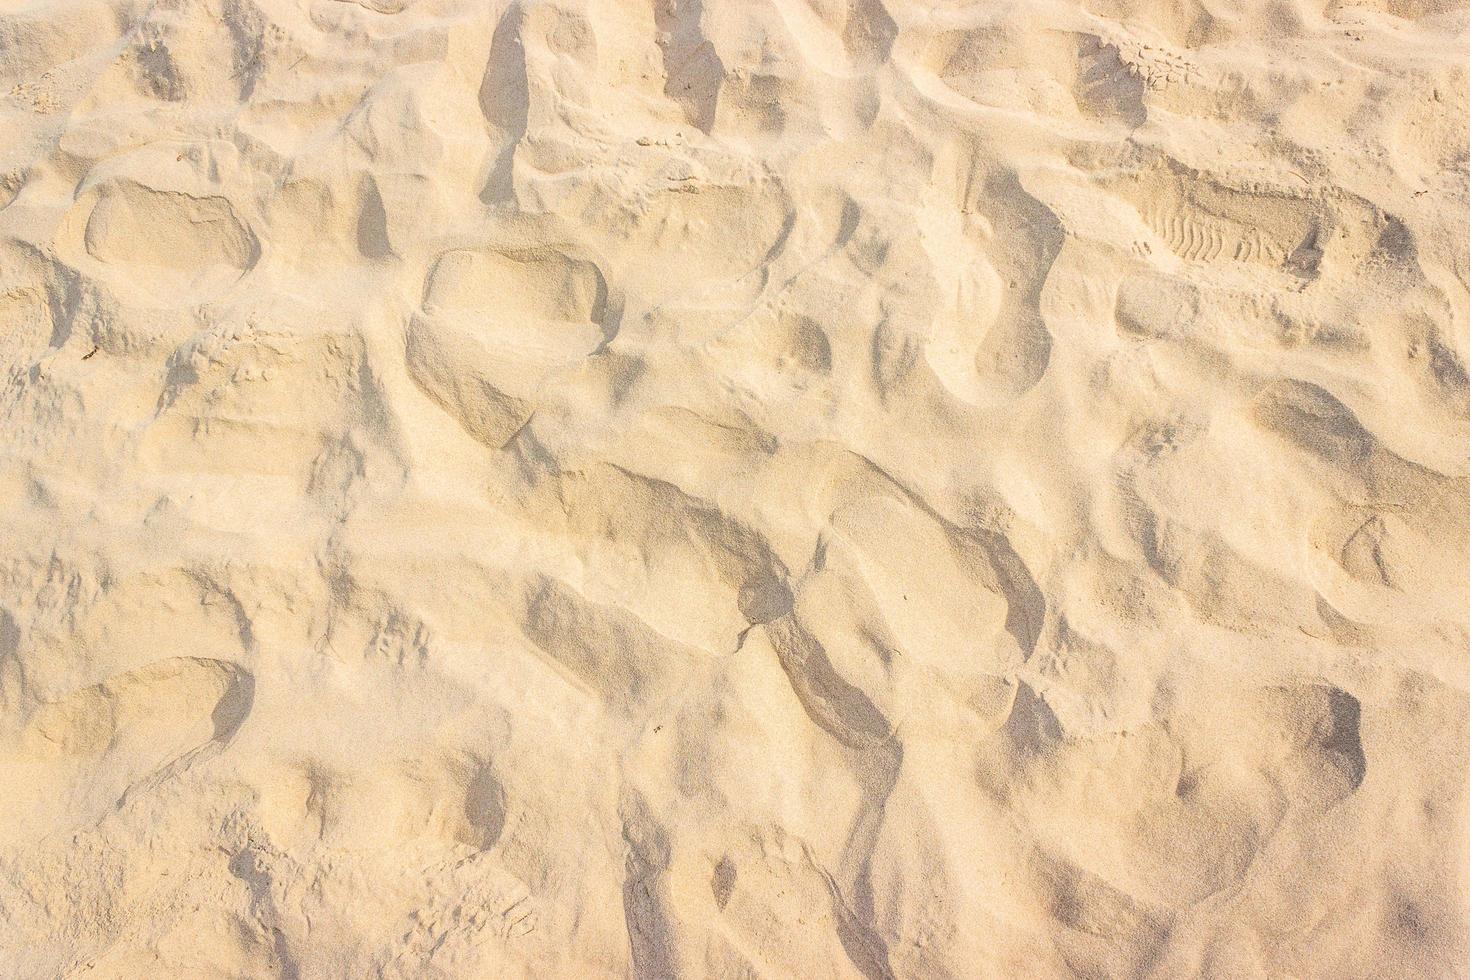 sable sur la plage pour la texture ou le fond photo